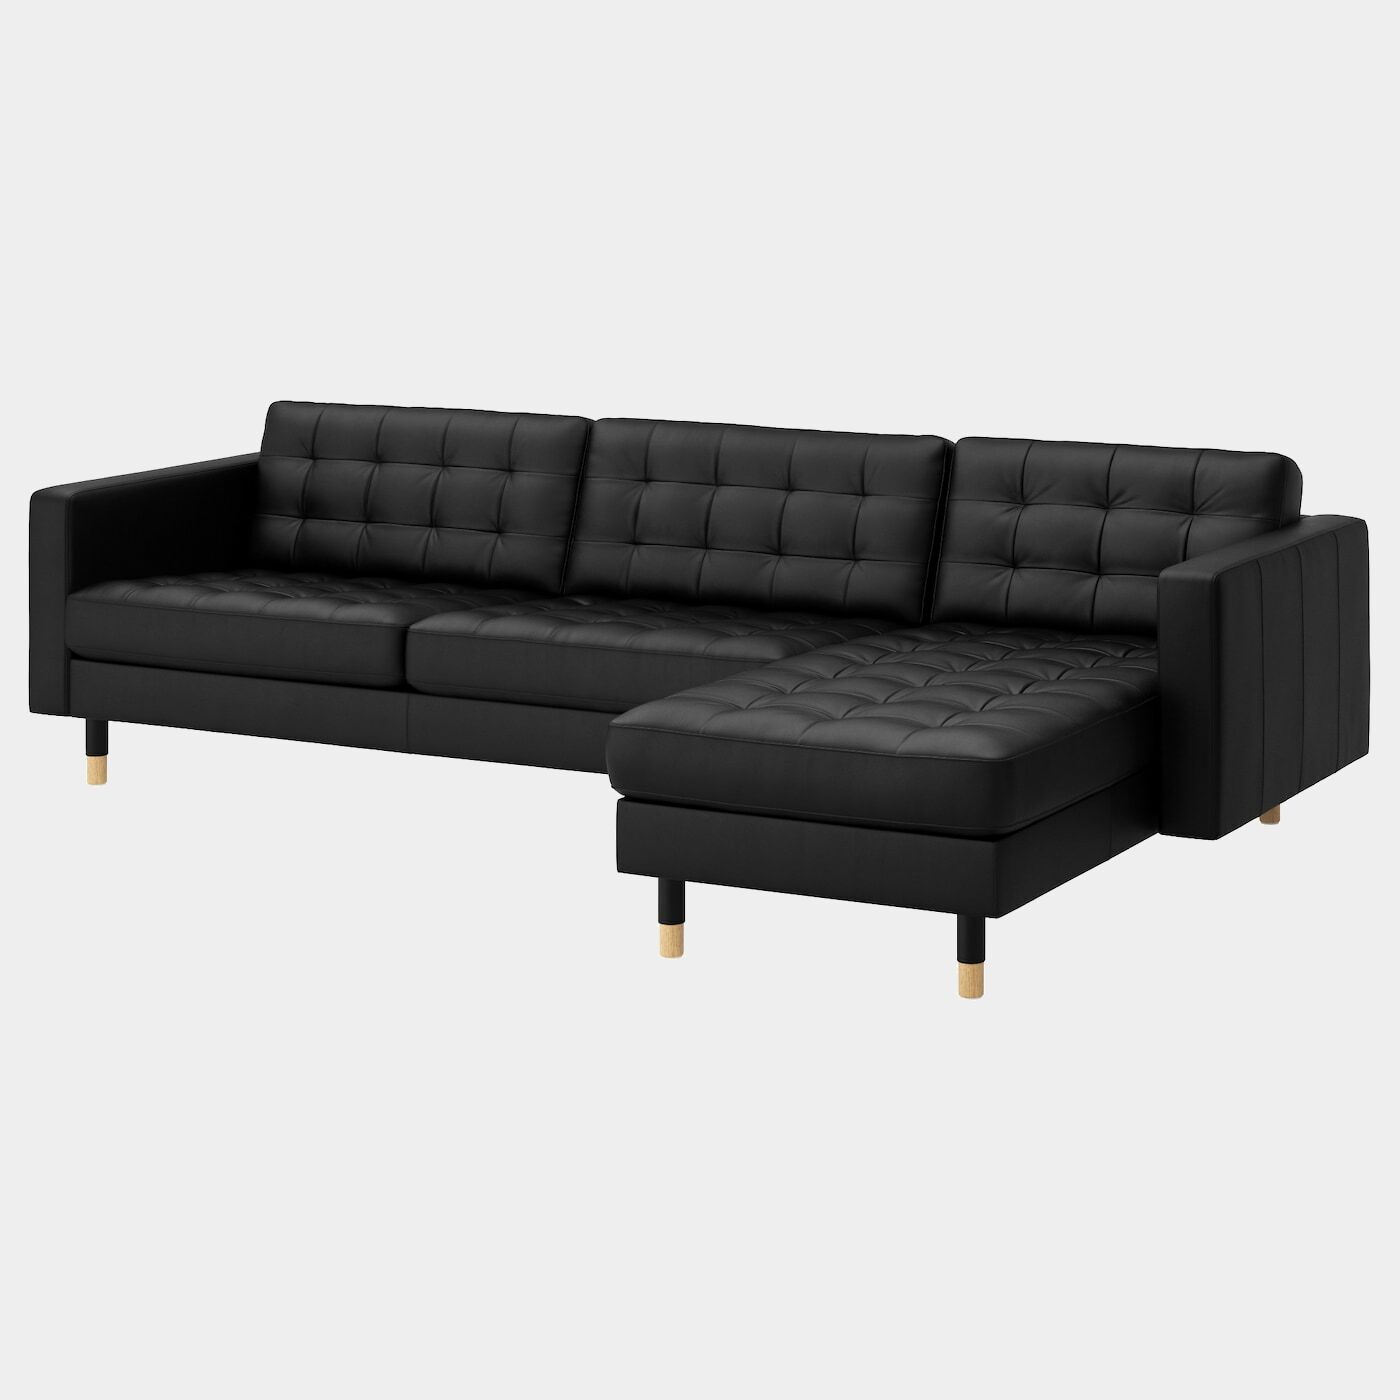 LANDSKRONA 4er-Sofa  - Ledersofas - Möbel Ideen für dein Zuhause von Home Trends. Möbel Trends von Social Media Influencer für dein Skandi Zuhause.